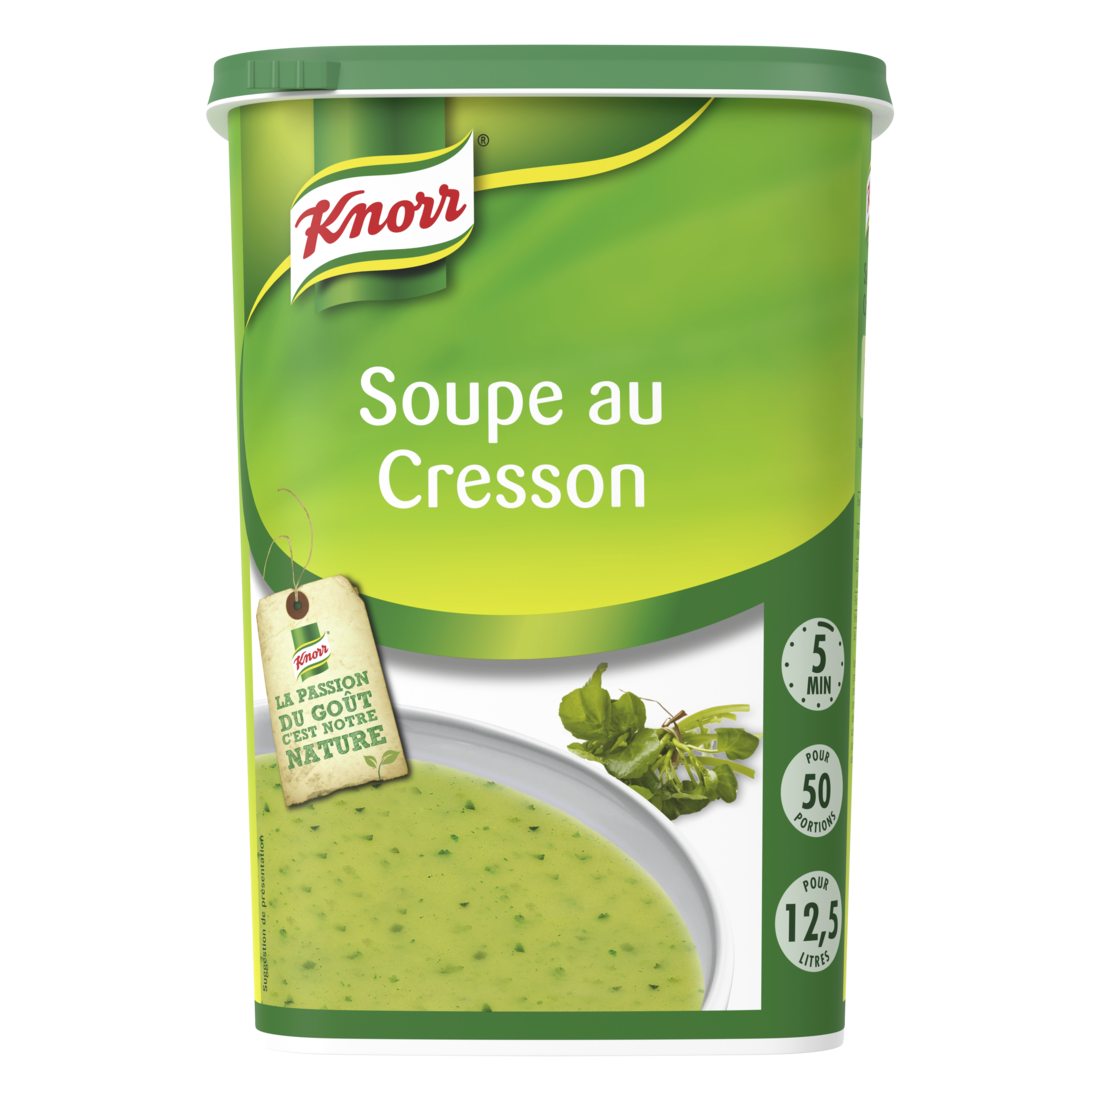 Knorr Soupe au Cresson 750g 50 portions